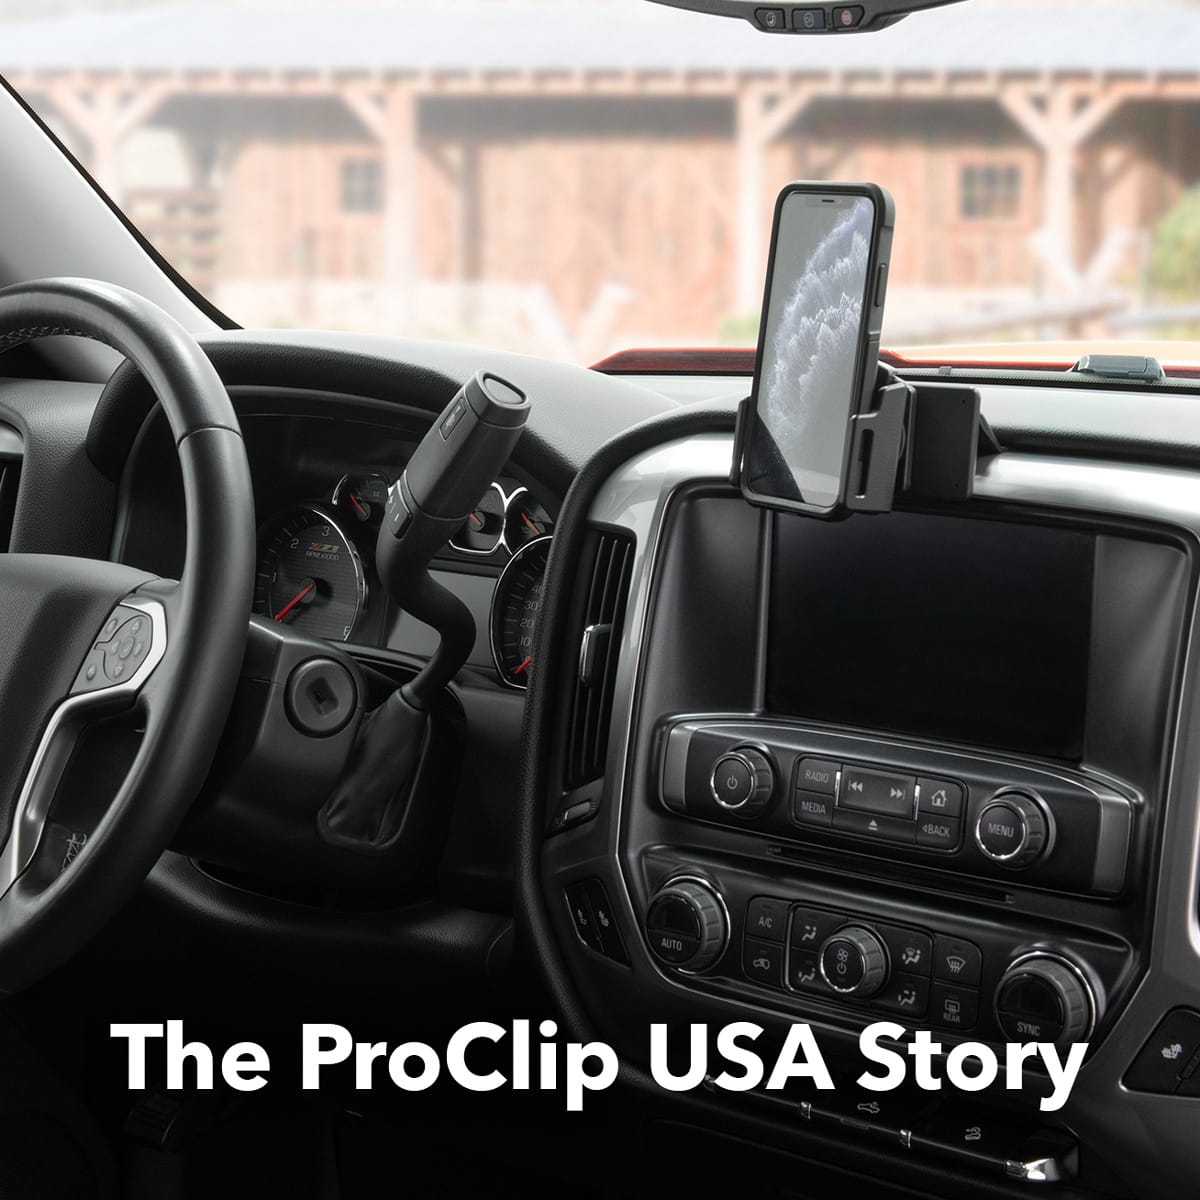 The ProClip USA Story